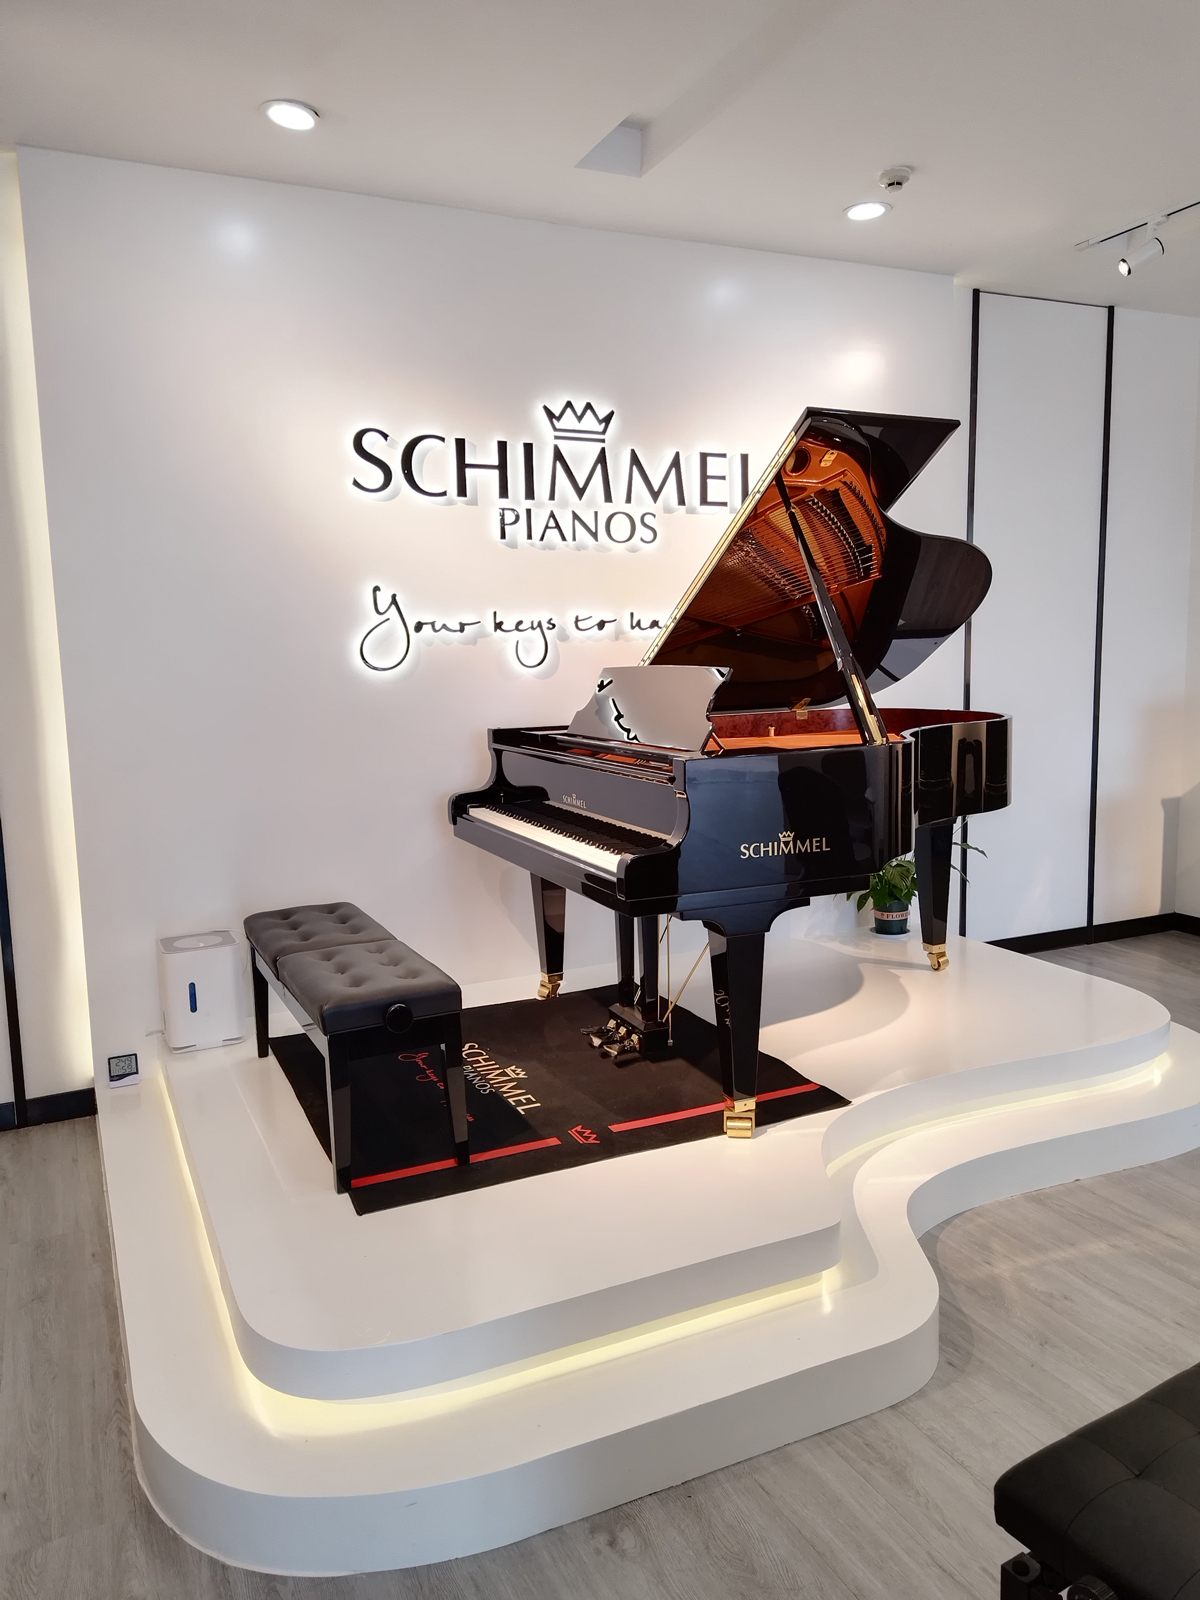 又一家舒密尔钢琴专卖店开业啦！